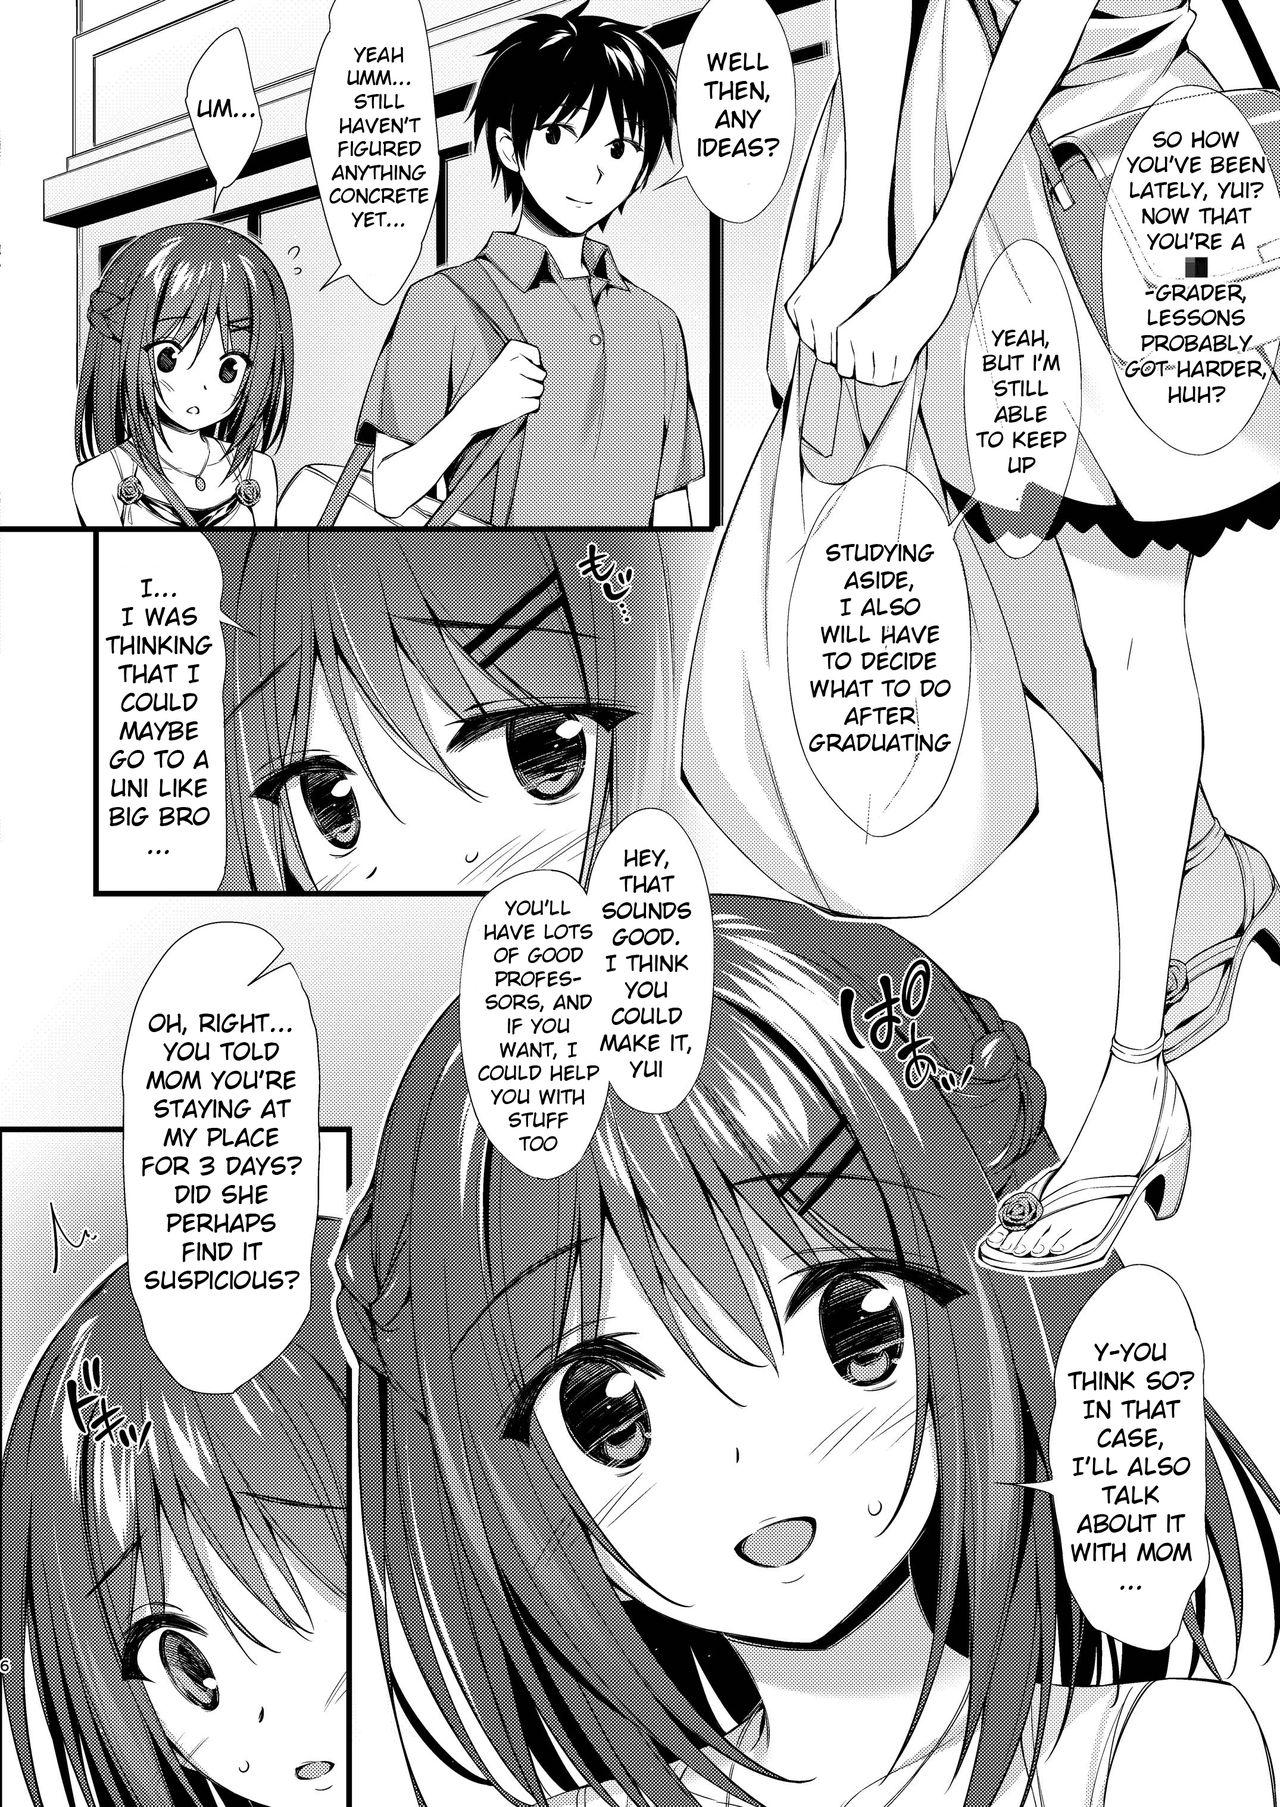 Small Tits Watashi wa Onii-chan to Tsukiaitai. - Original Work - Page 5